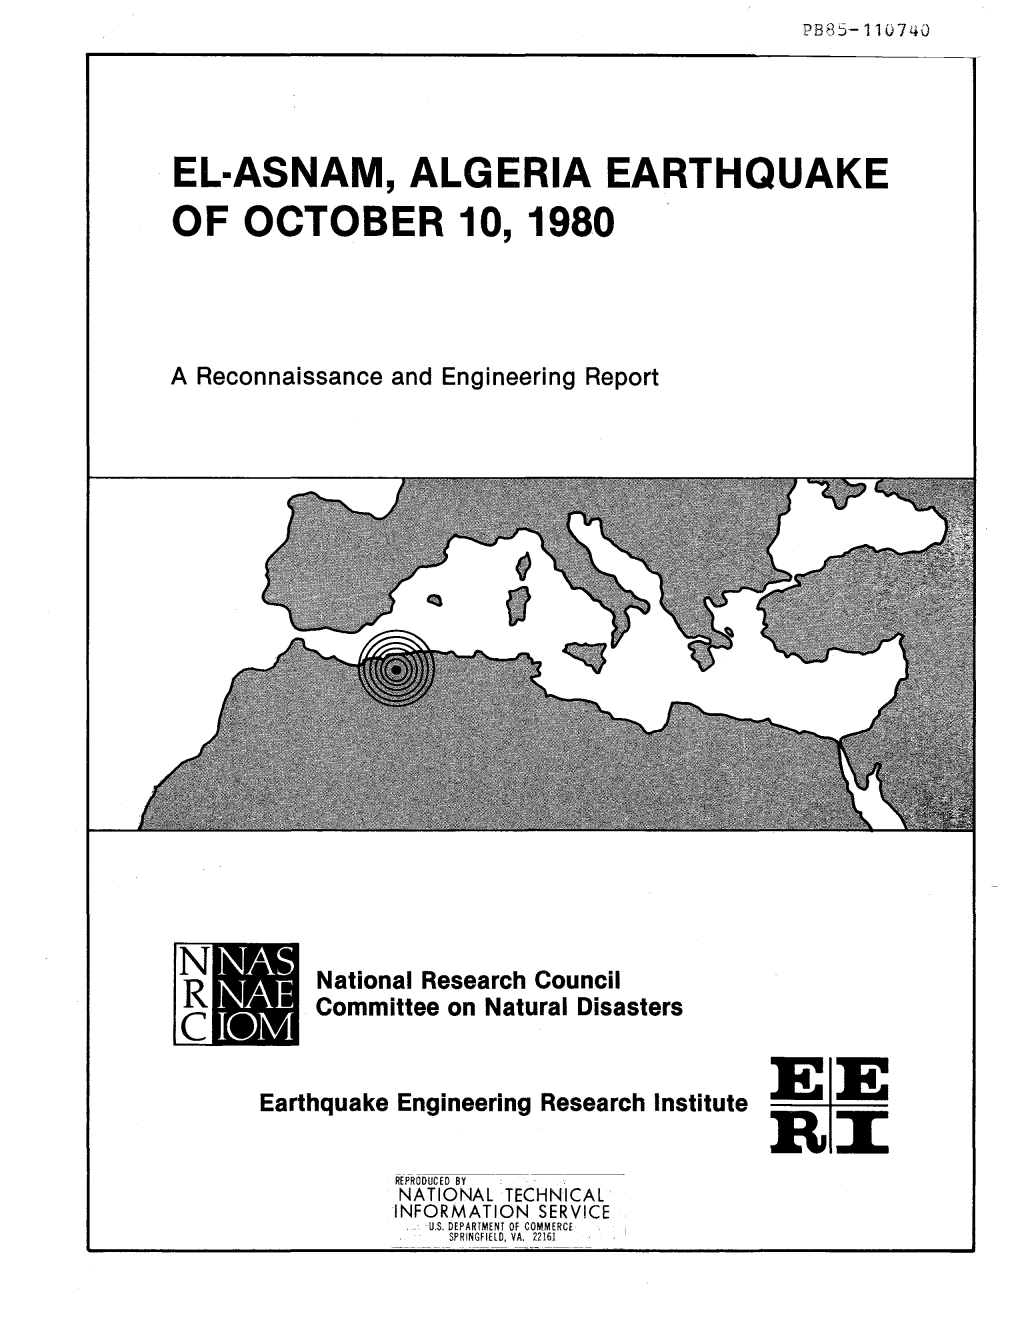 El-Asnam, Algeria Earthquake of October 10, 1980